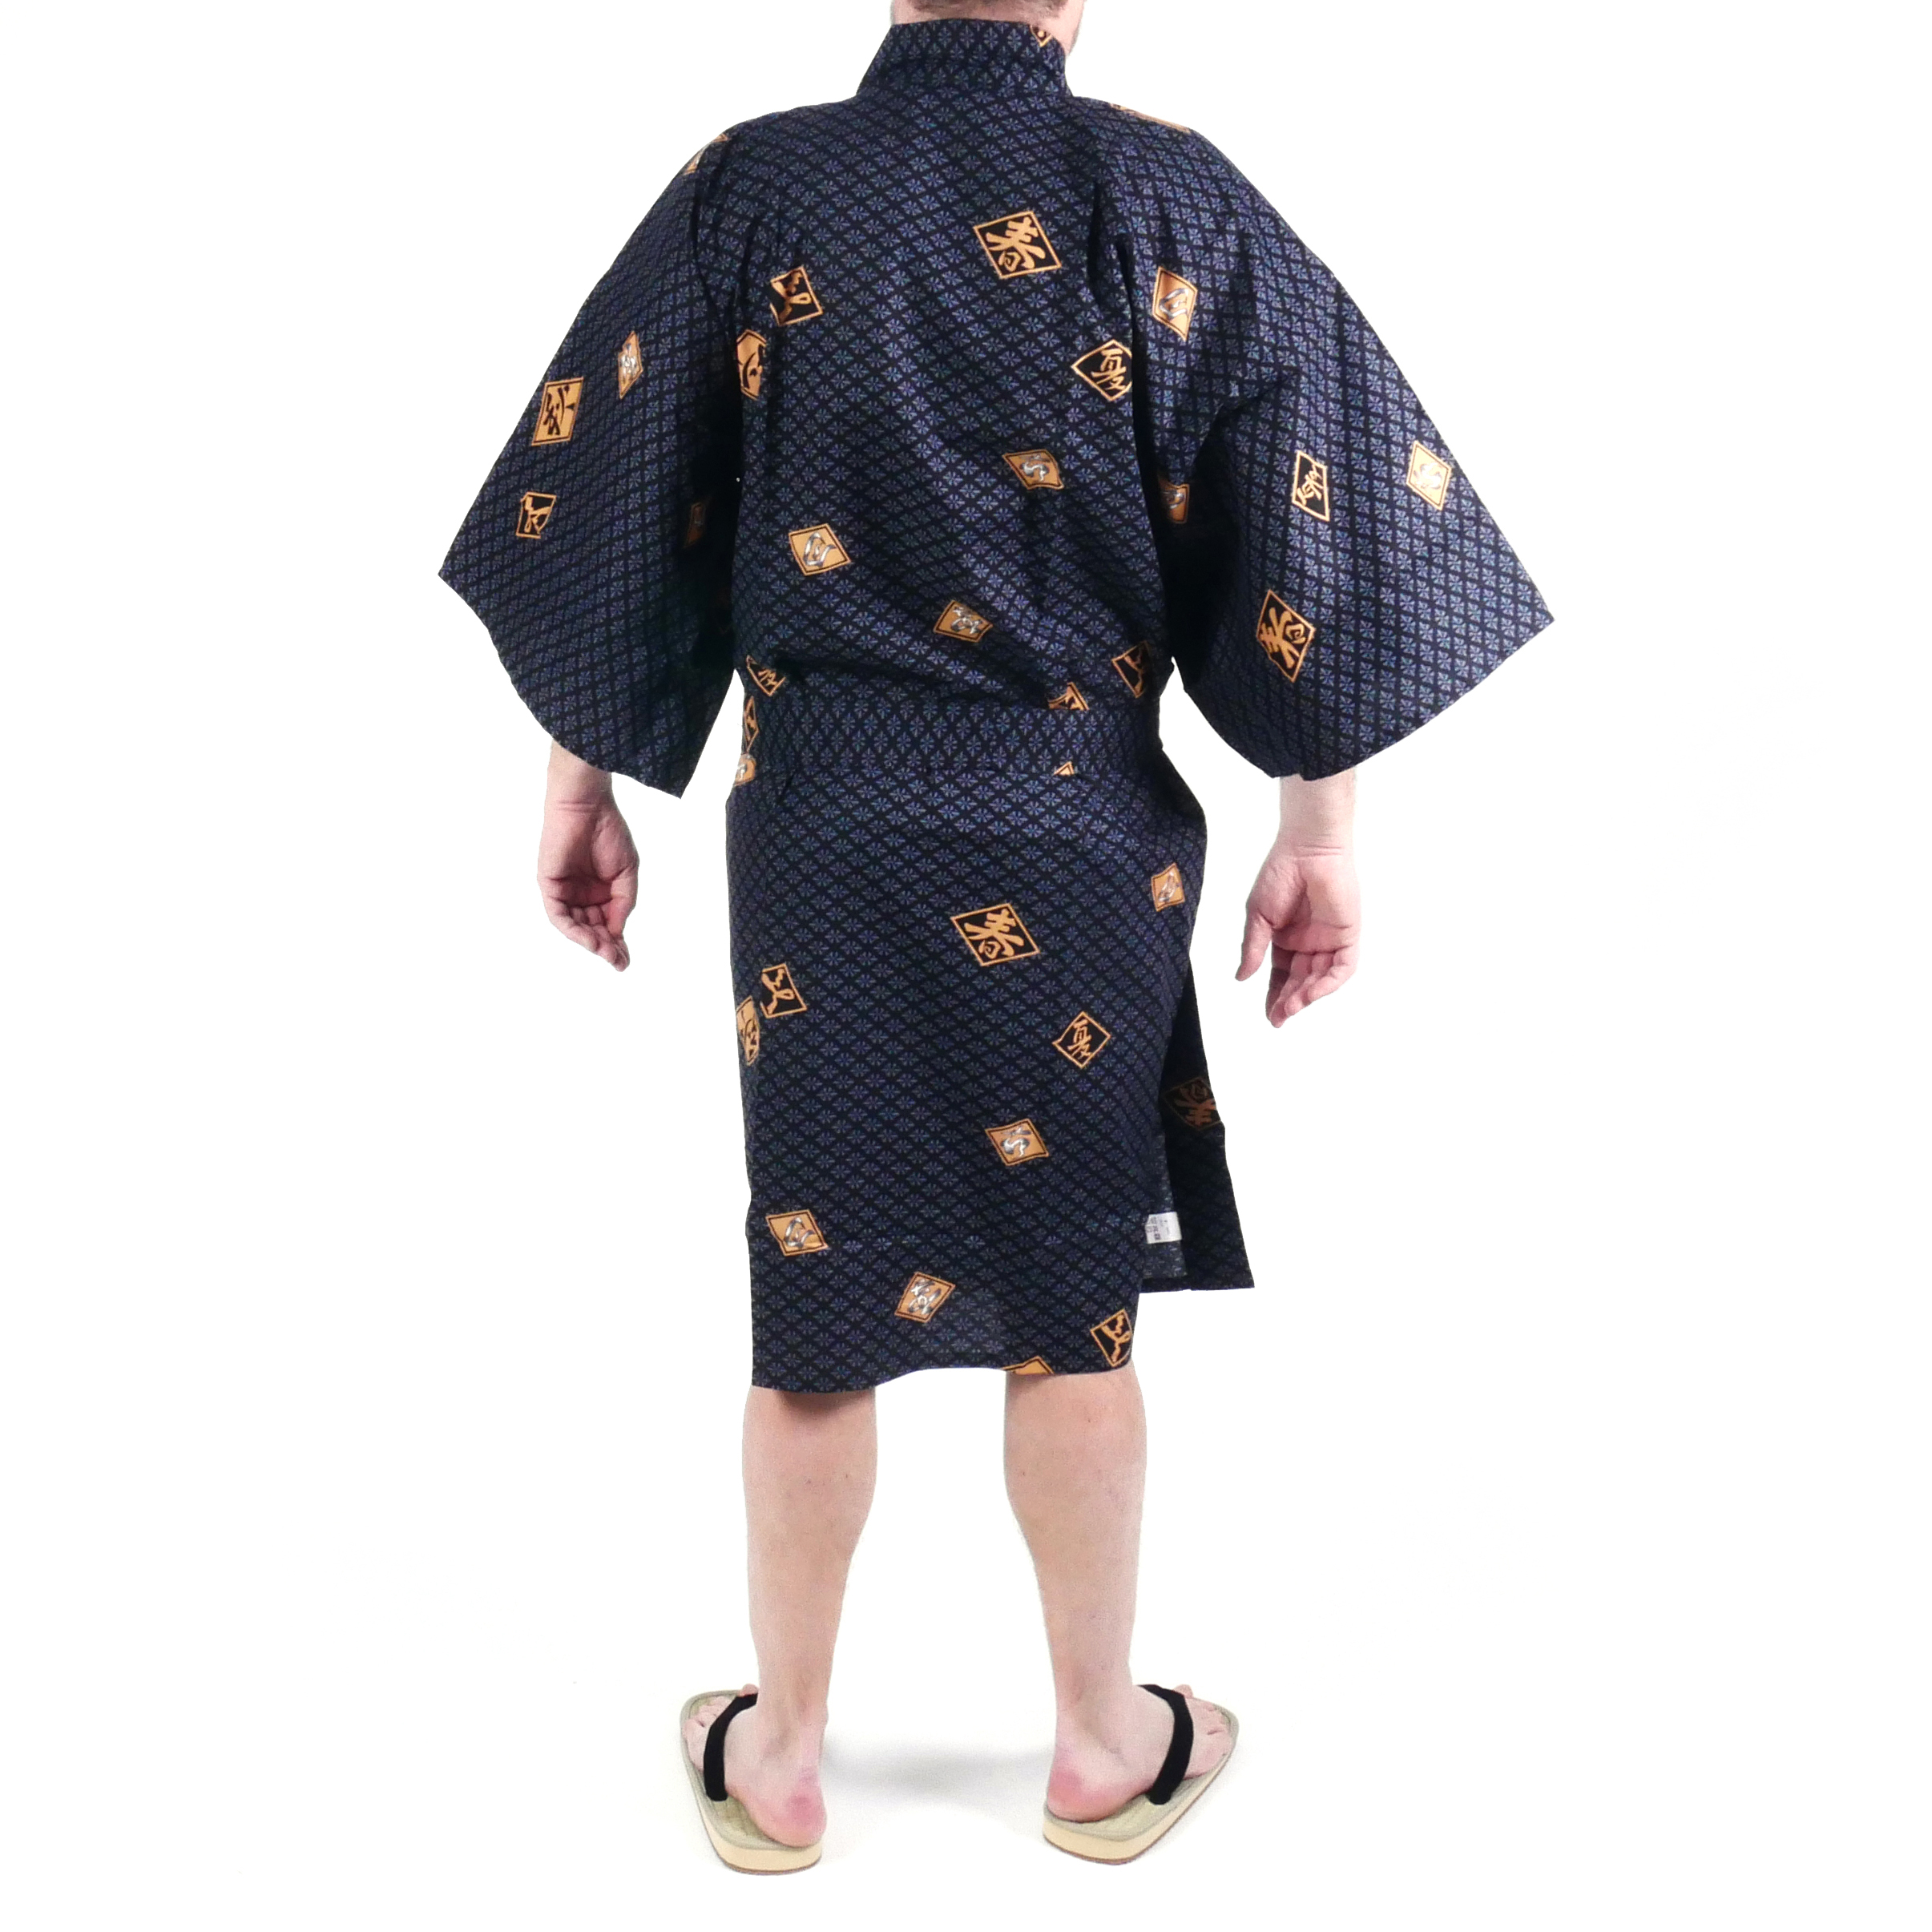 https://wakagi.fr/14041/kimono-happi-tradizionale-giapponese-in-cotone-nero-con-motivi-a-rombi-e-kanji-per-uomo.jpg